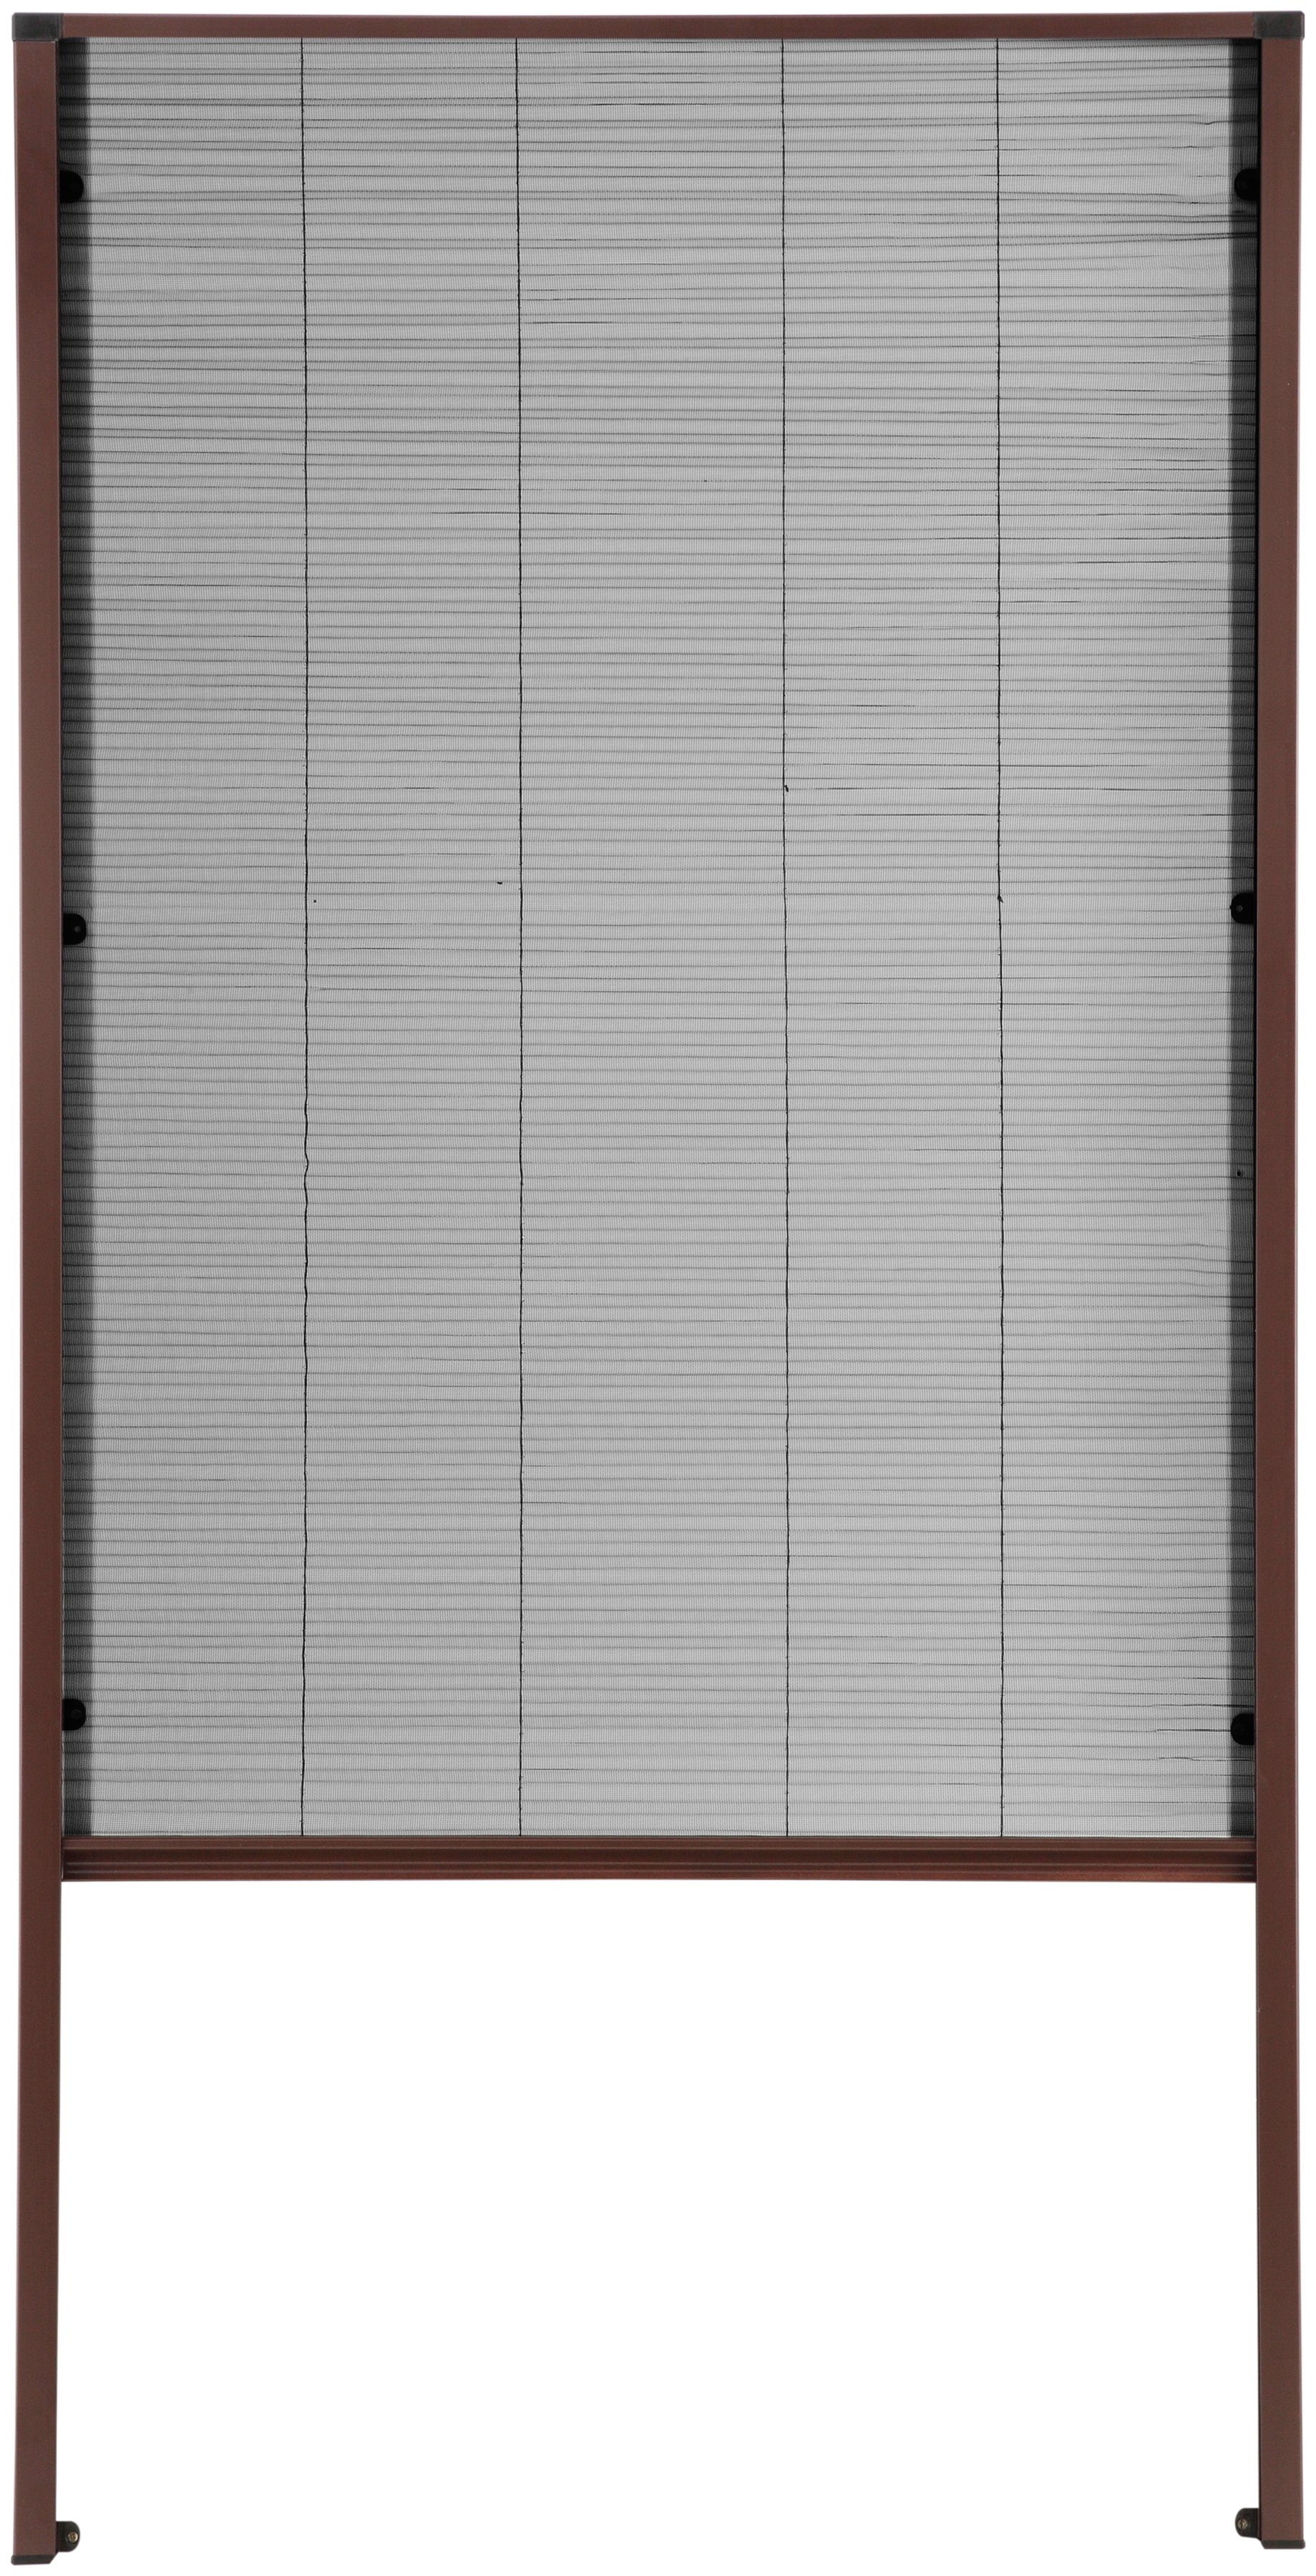 Sonderpreis-Highlights Insektenschutzrollo für Dachfenster, hecht braun/anthrazit, verschraubt, cm transparent, international, BxH: 80x160